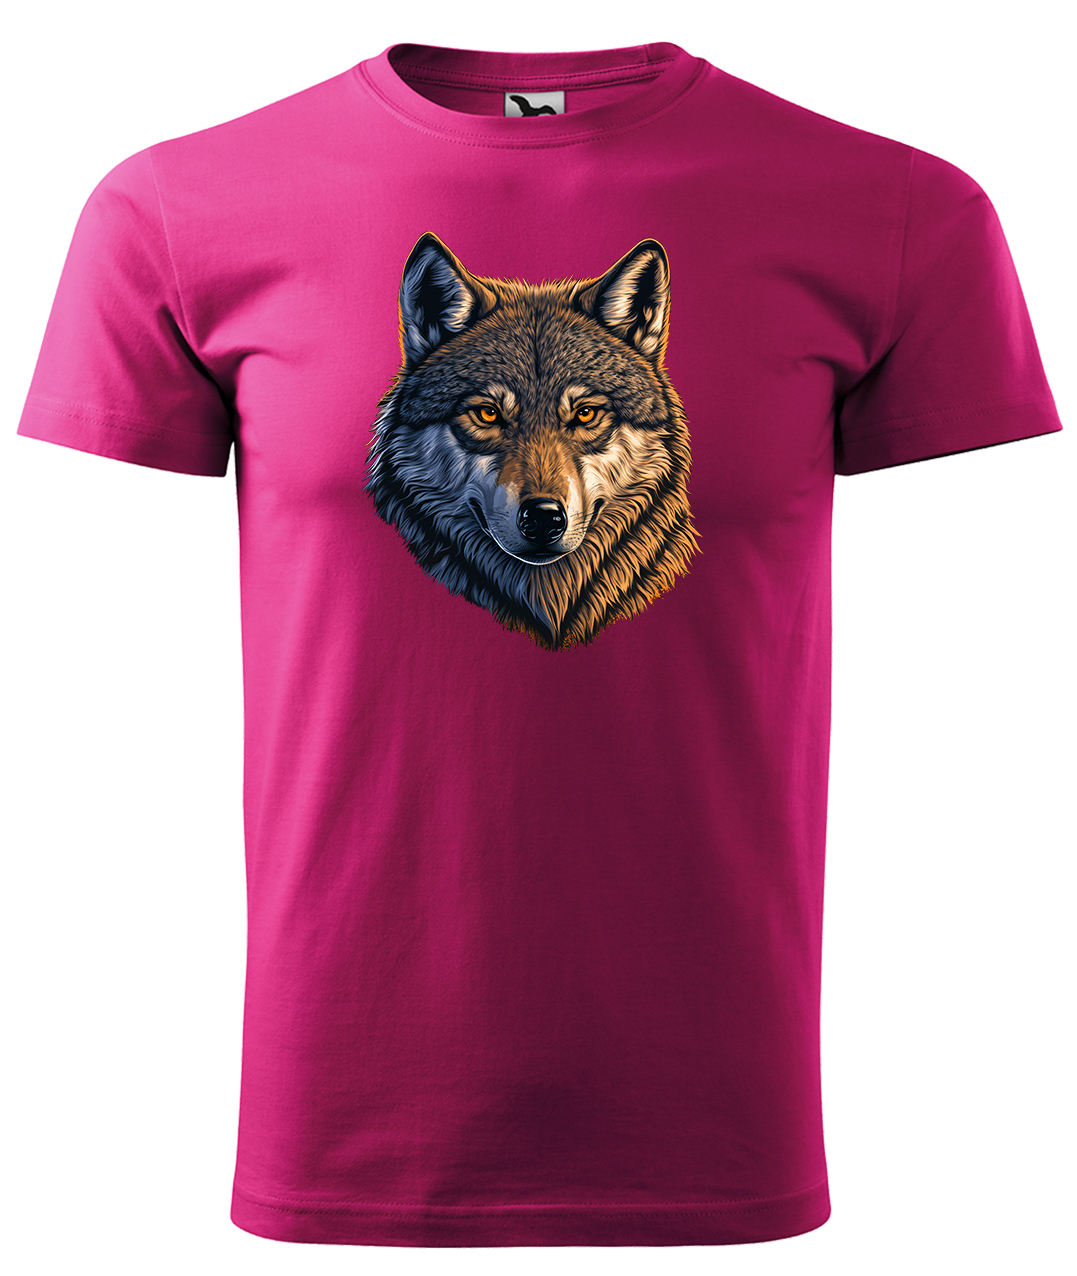 Dětské tričko s vlkem - Hlava vlka Velikost: 10 let / 146 cm, Barva: Malinová (63), Délka rukávu: Krátký rukáv